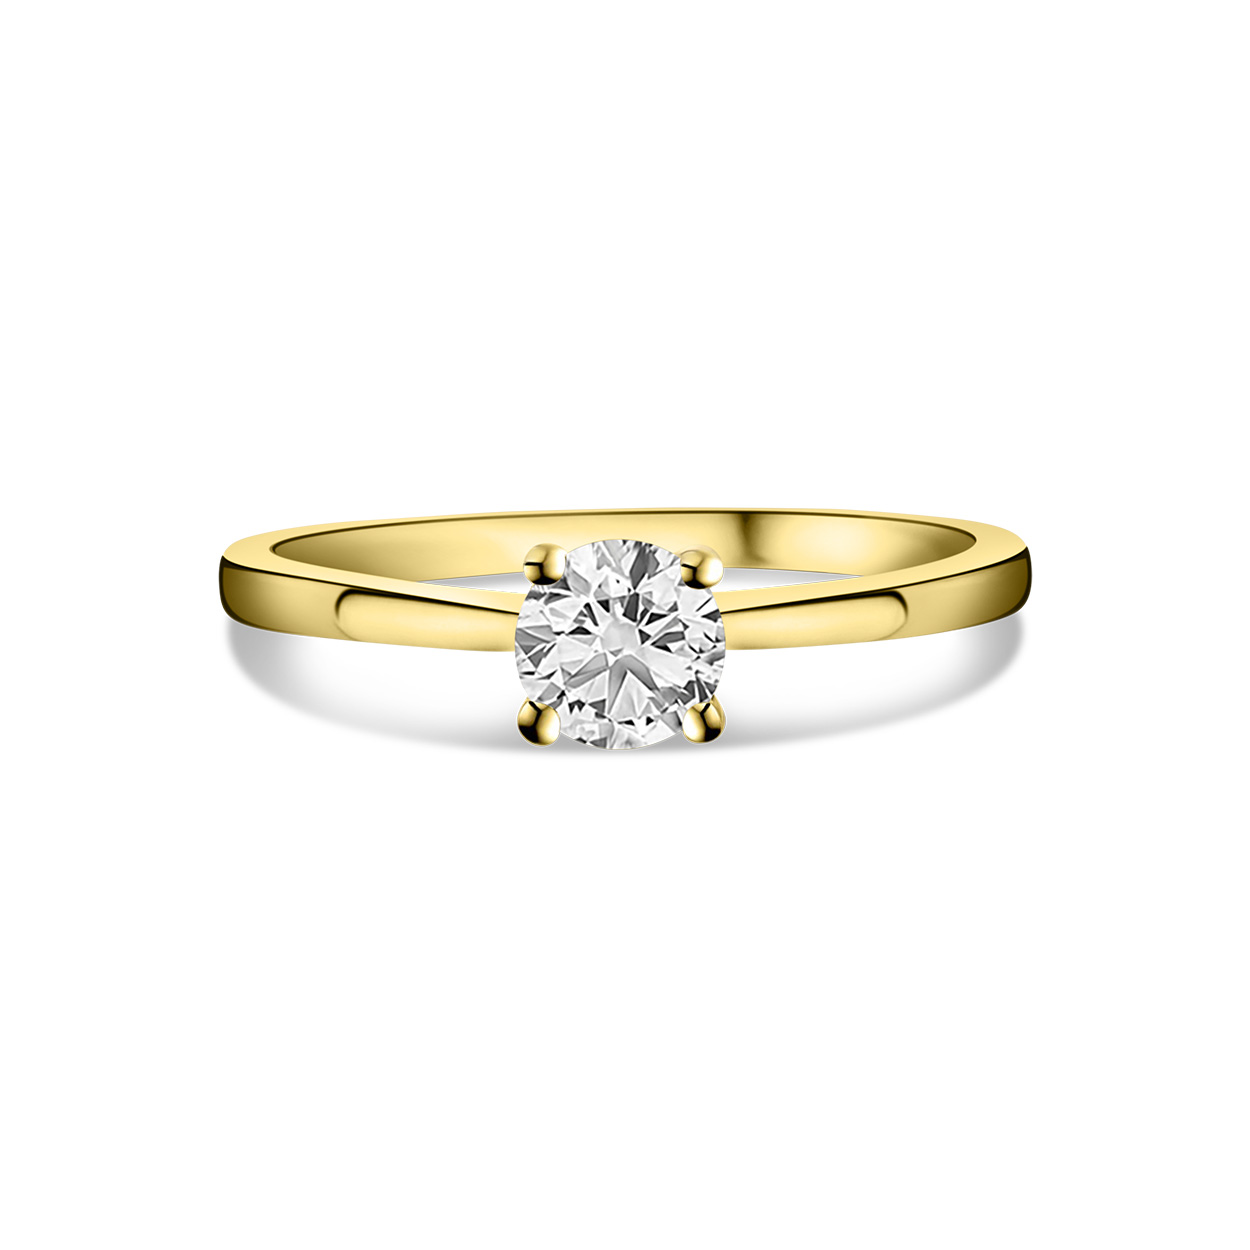 Geelgouden ring solitair met lab grown diamant R159-R23MK0006-LG-060-Y